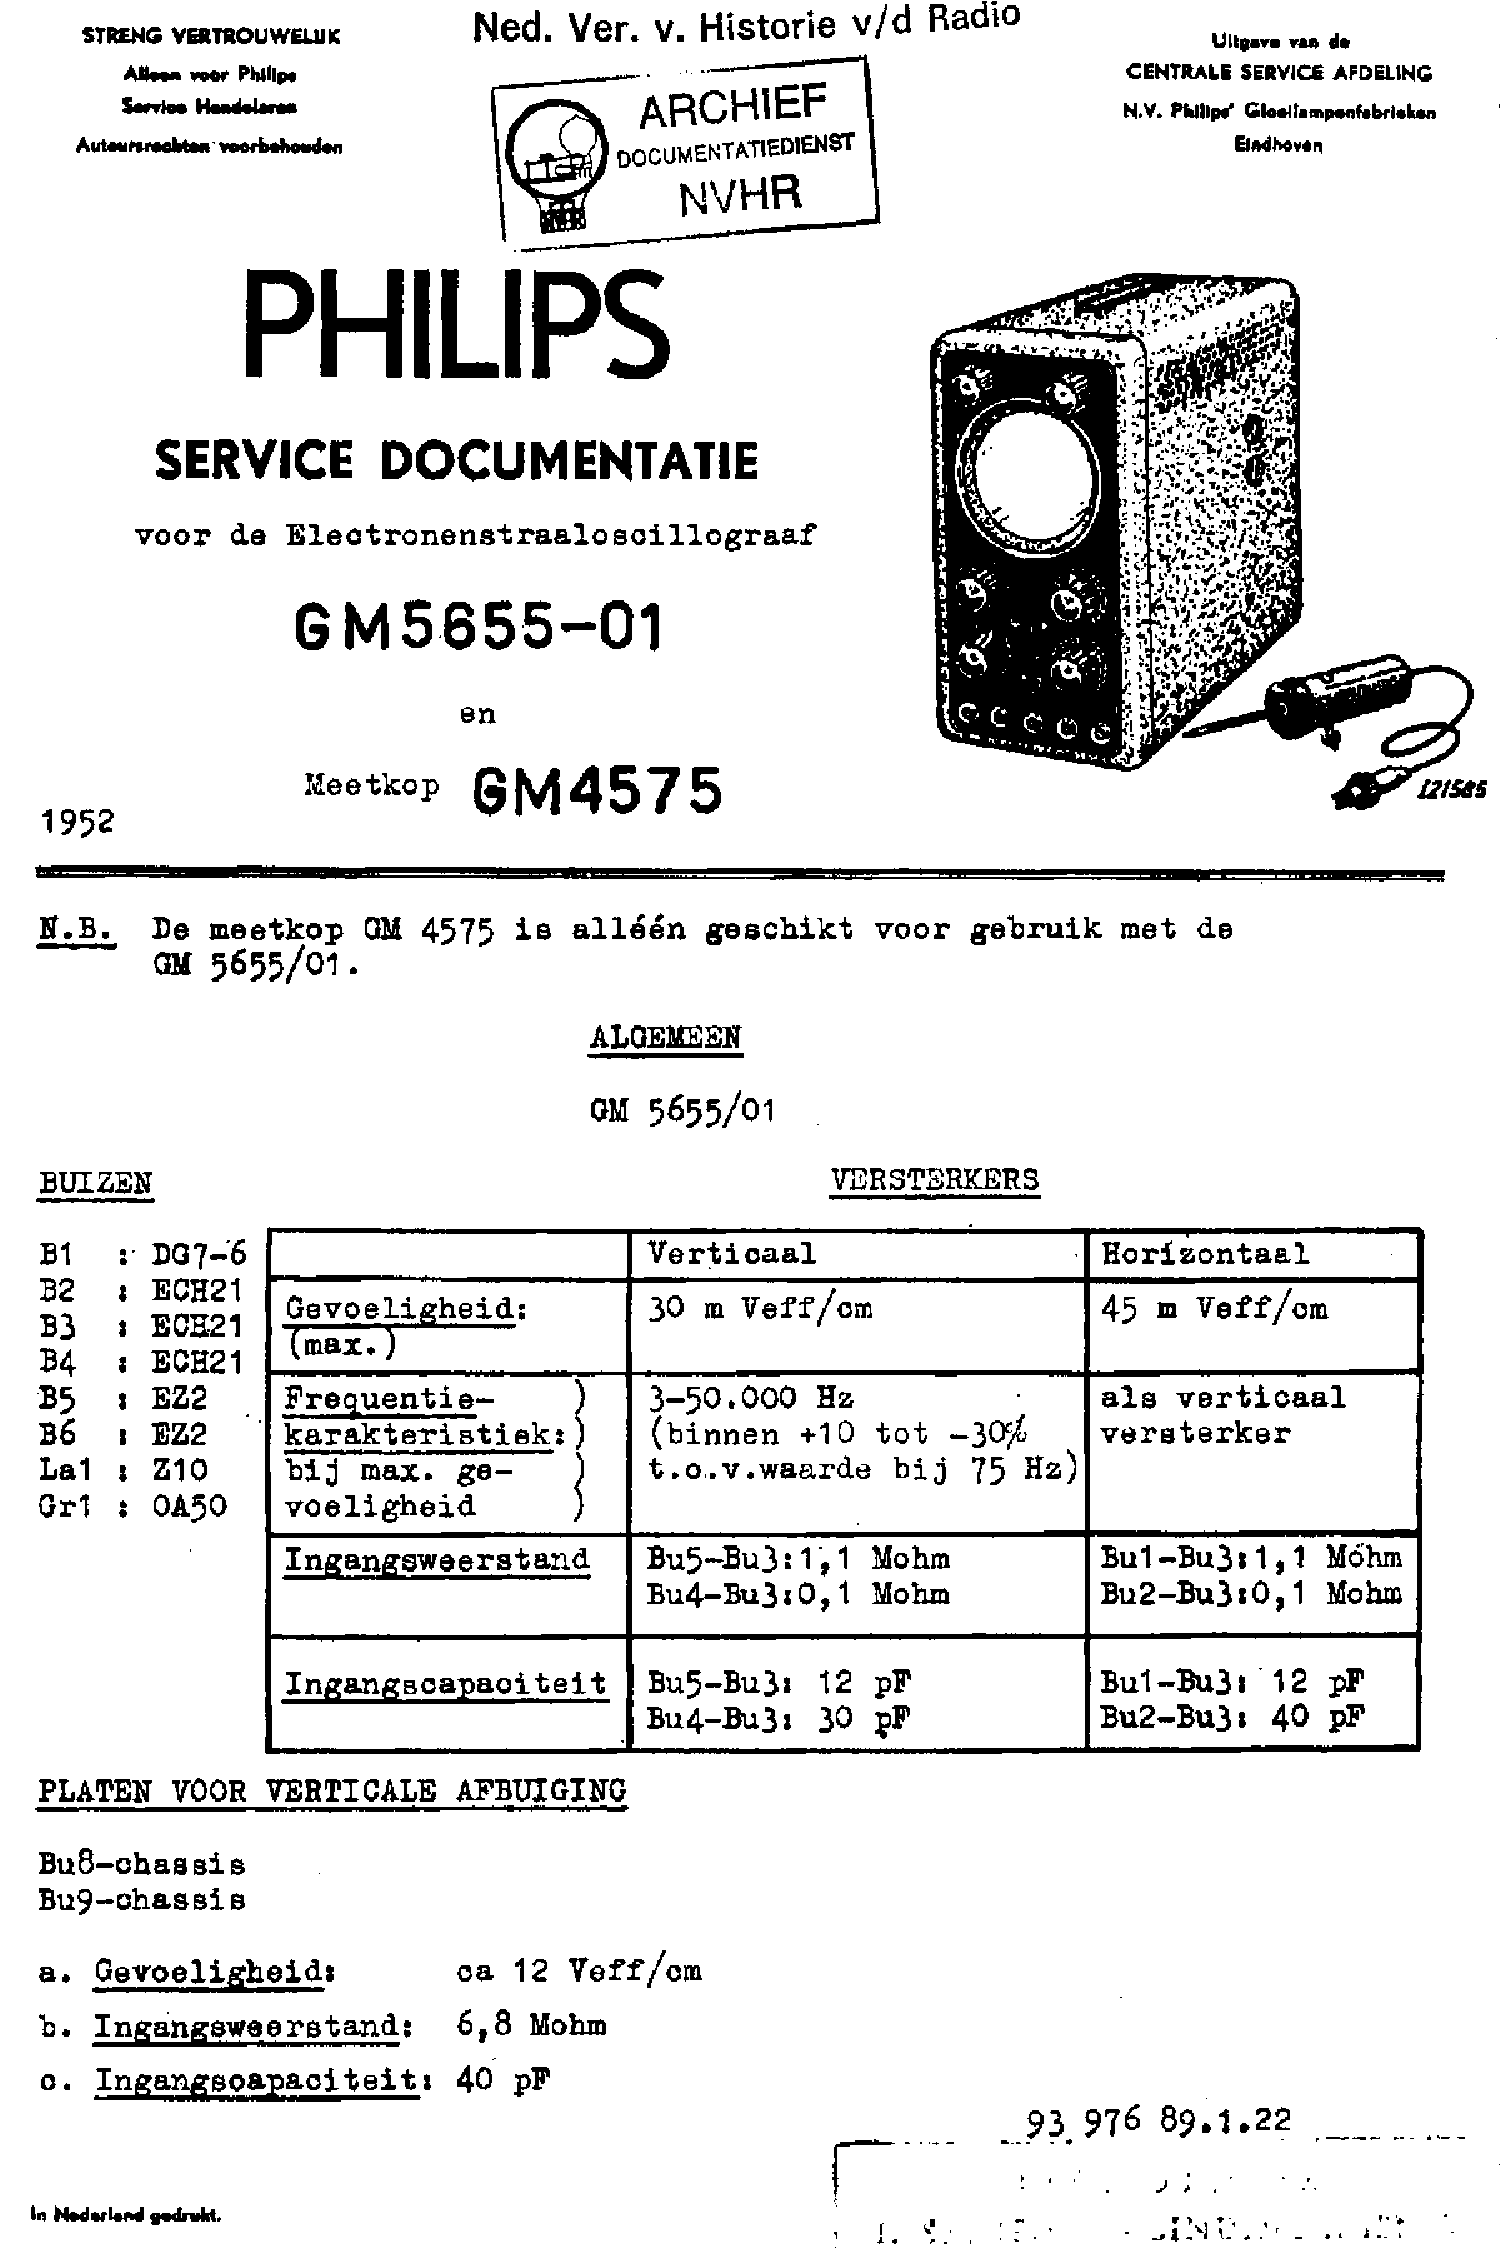 PHILIPS PE-1509 0-30V,0.4A LABORTAP 1970 SM Service Manual free